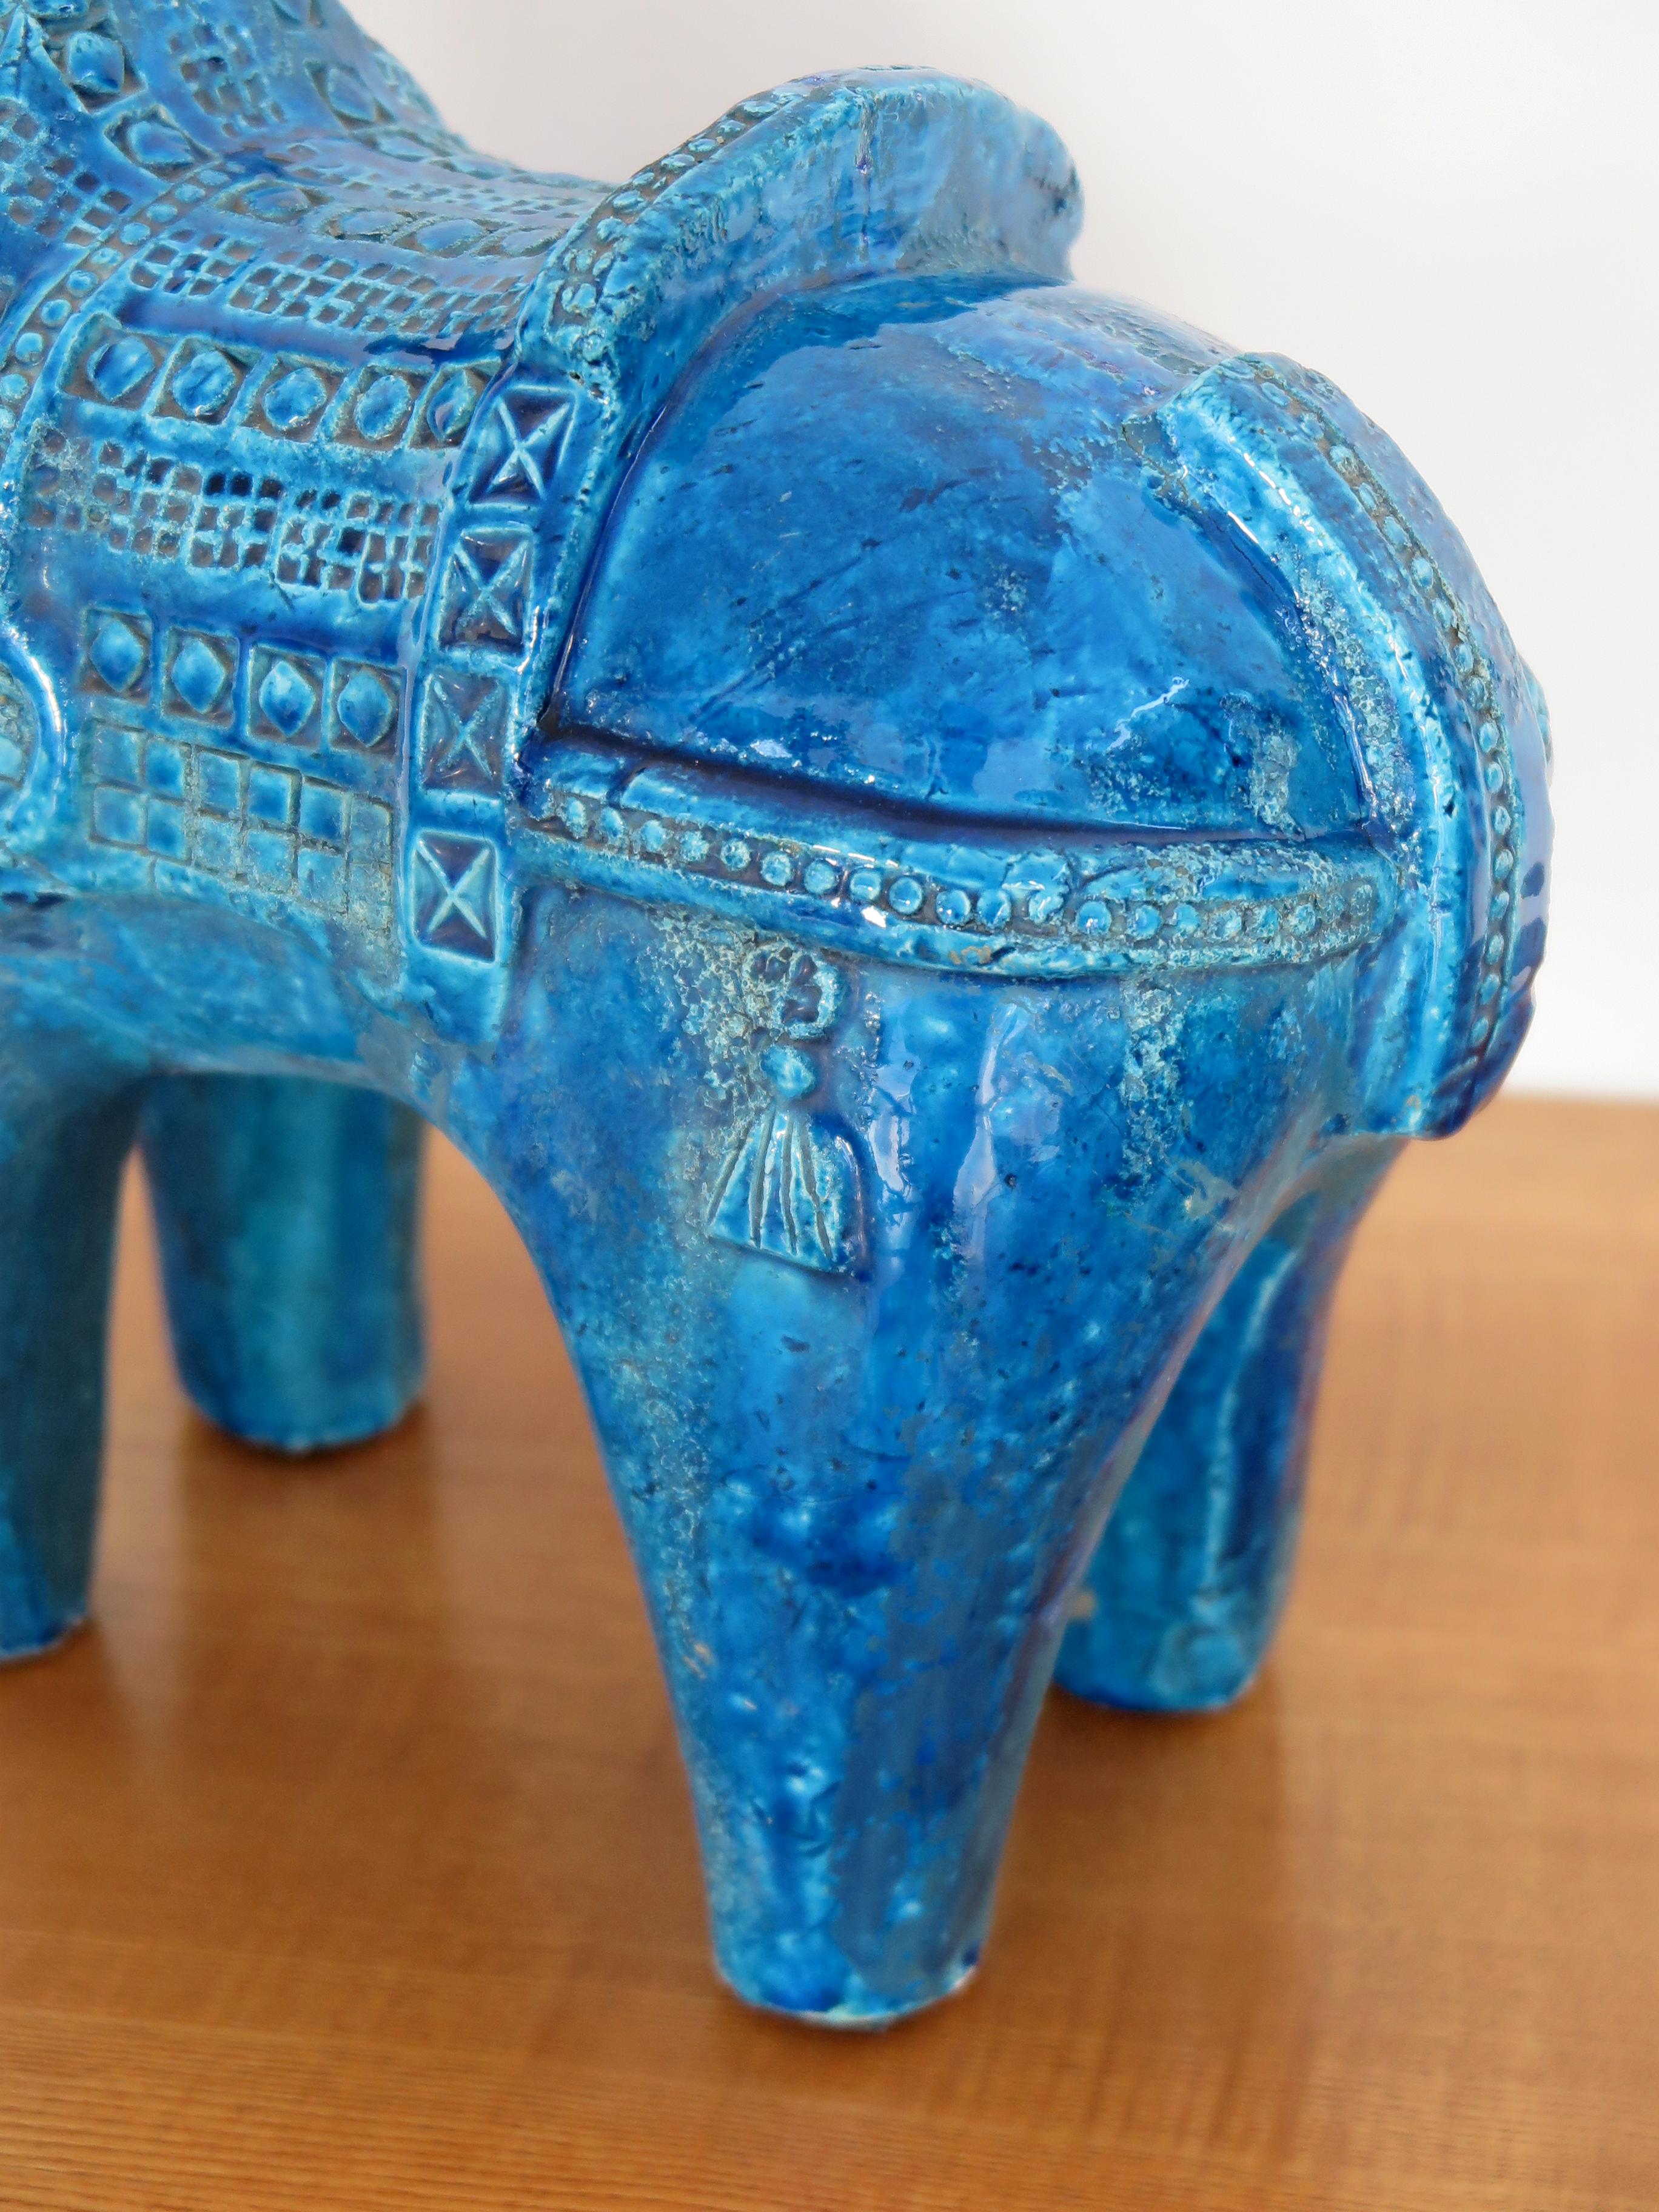 Aldo Londi for Bitossi Italian Midcentury Blue Sculpture Ceramic Horse 1960s For Sale 3